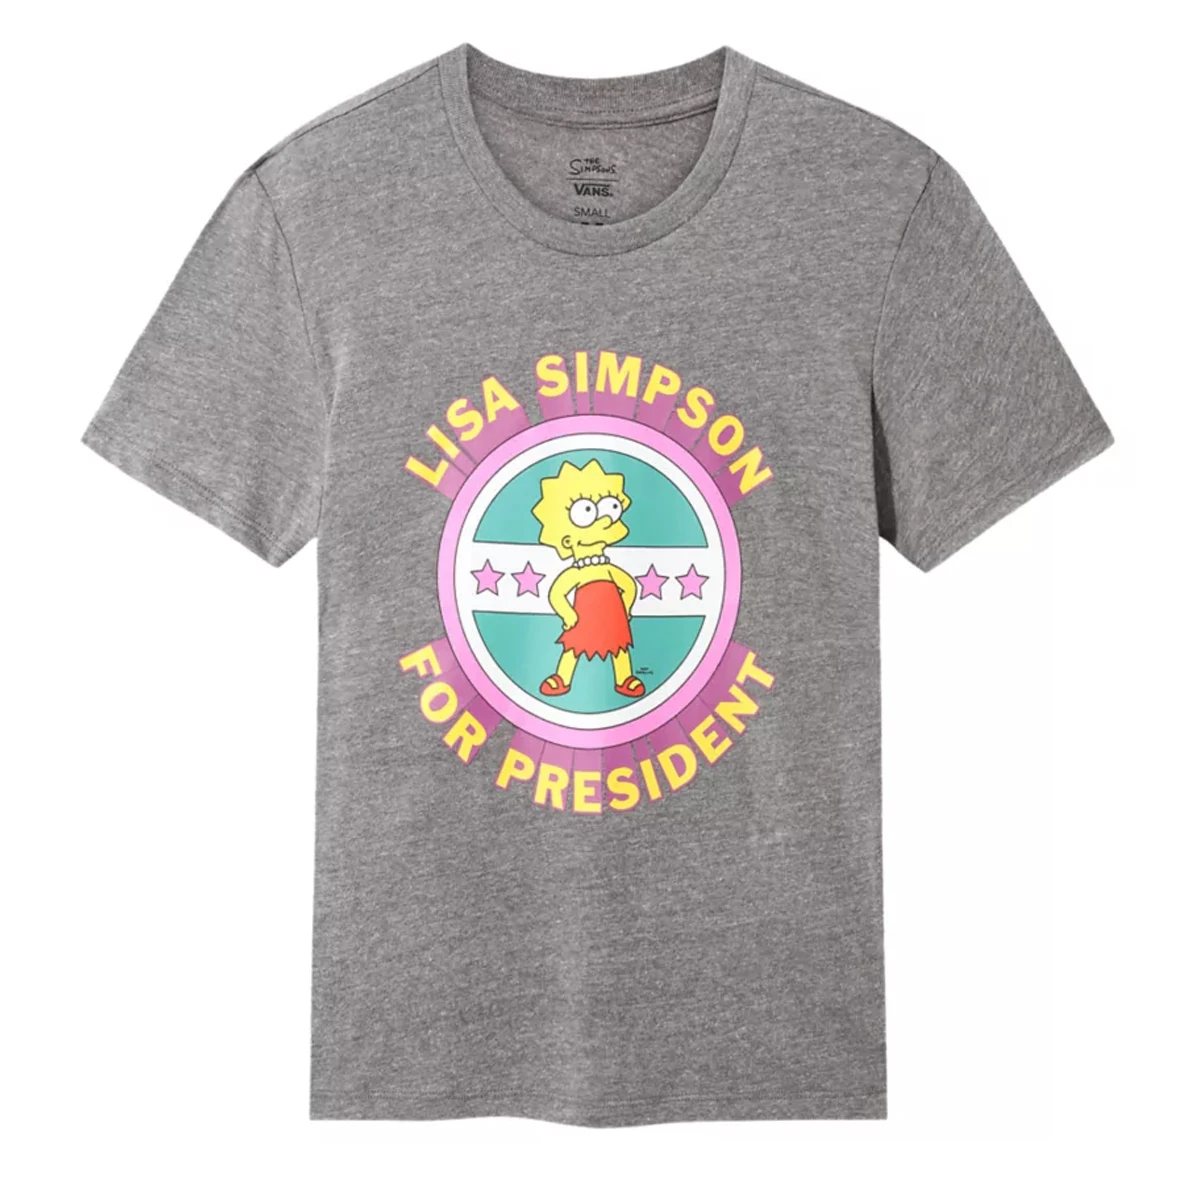 Vans x The Simpsons Lisa 4 Prez T-Shirt VN0A4V4B17G1